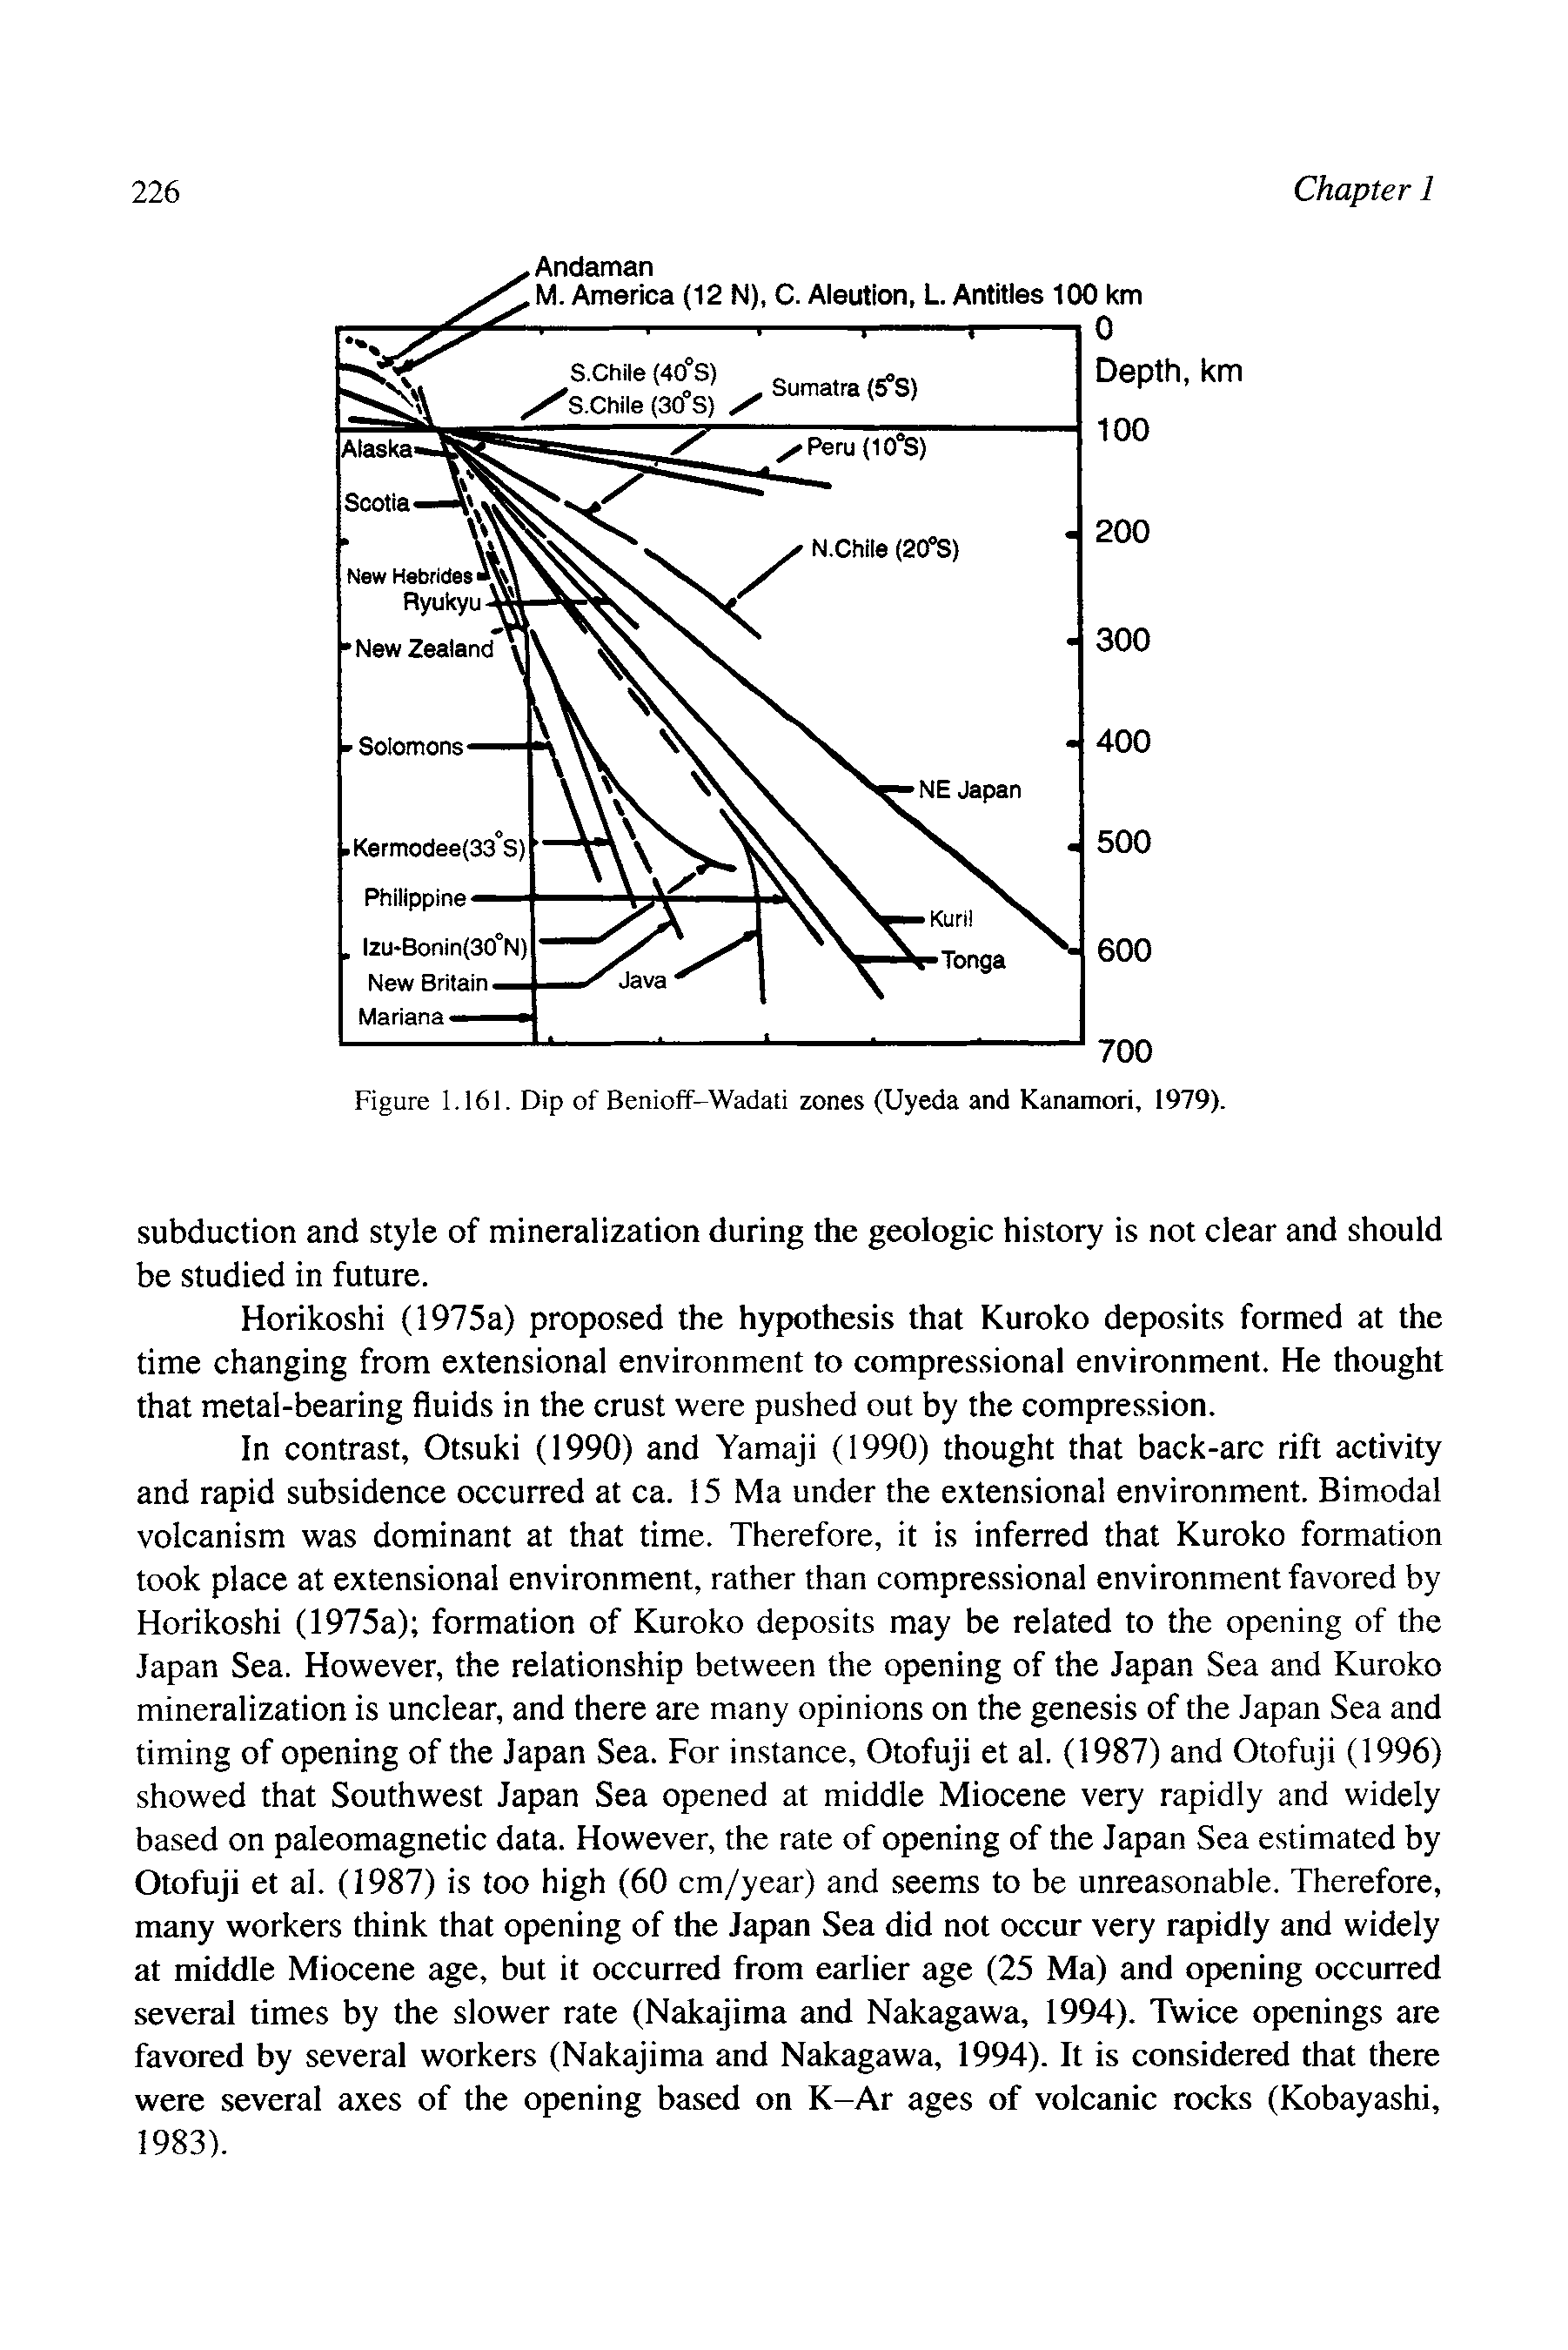 Figure 1.161. Dip of Benioff-Wadati zones (Uyeda and Kanamori, 1979).